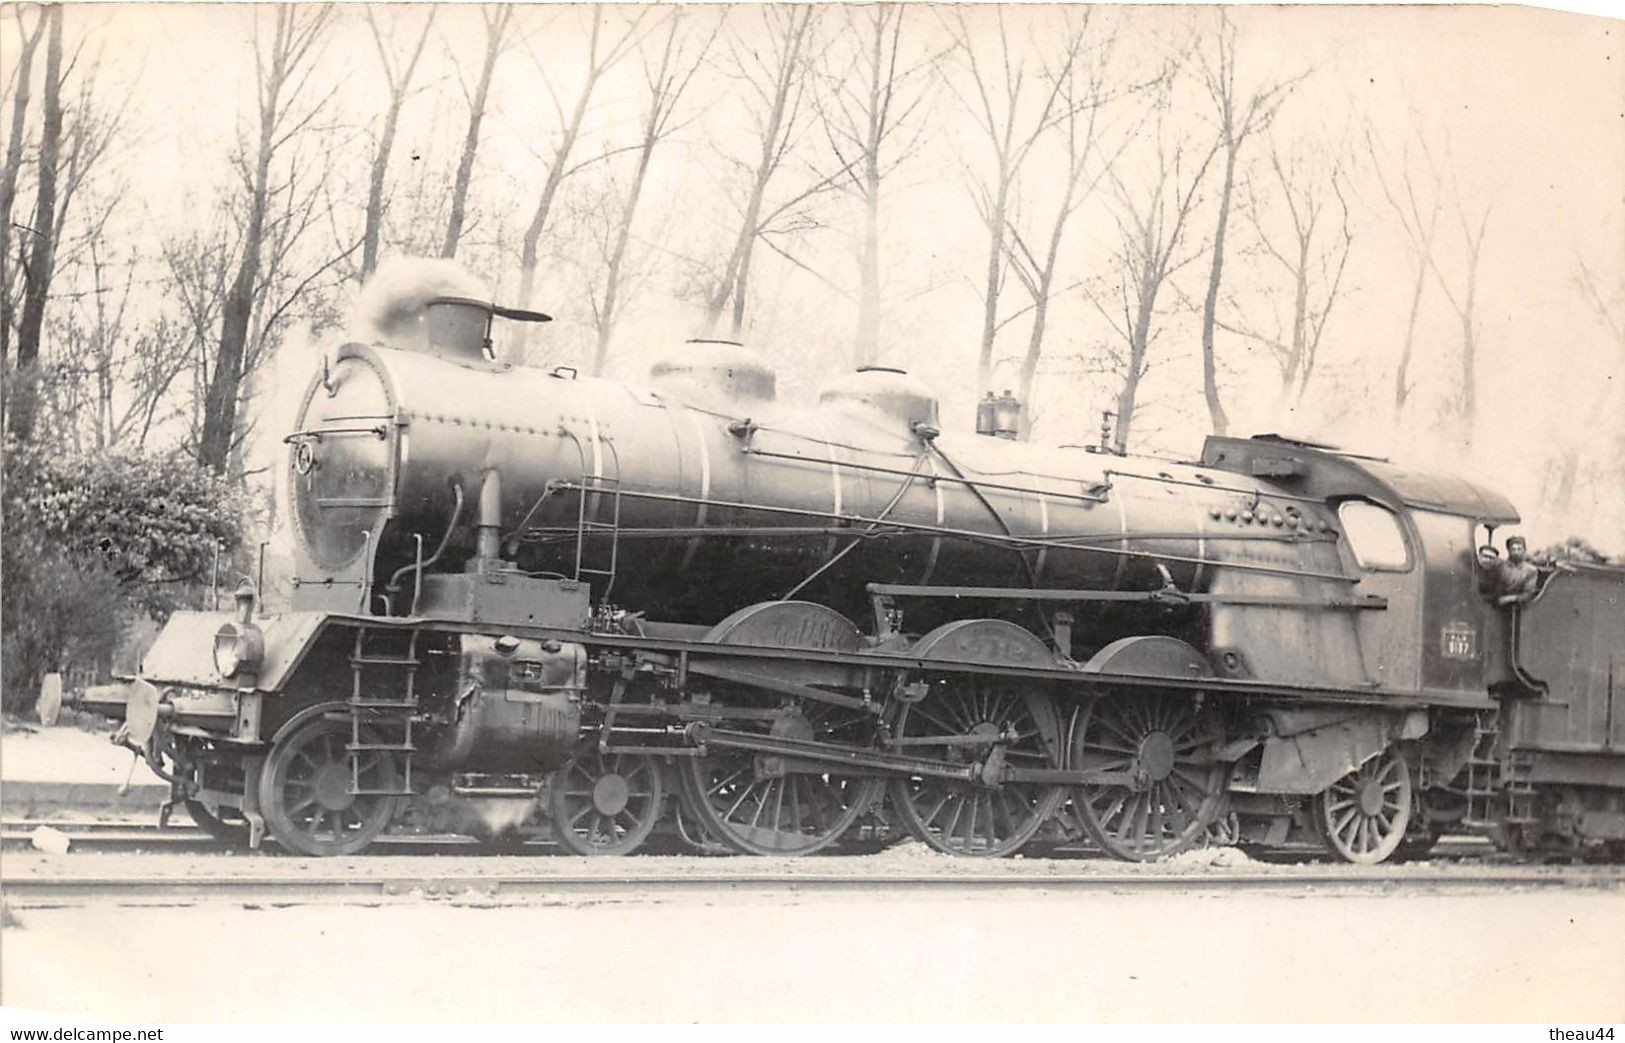 ¤¤   -  Carte-Photo D'une Locomotive Ancienne   -  Chemin De Fer Du P.L.M.  -  Cheminots      -  ¤¤ - Materiale